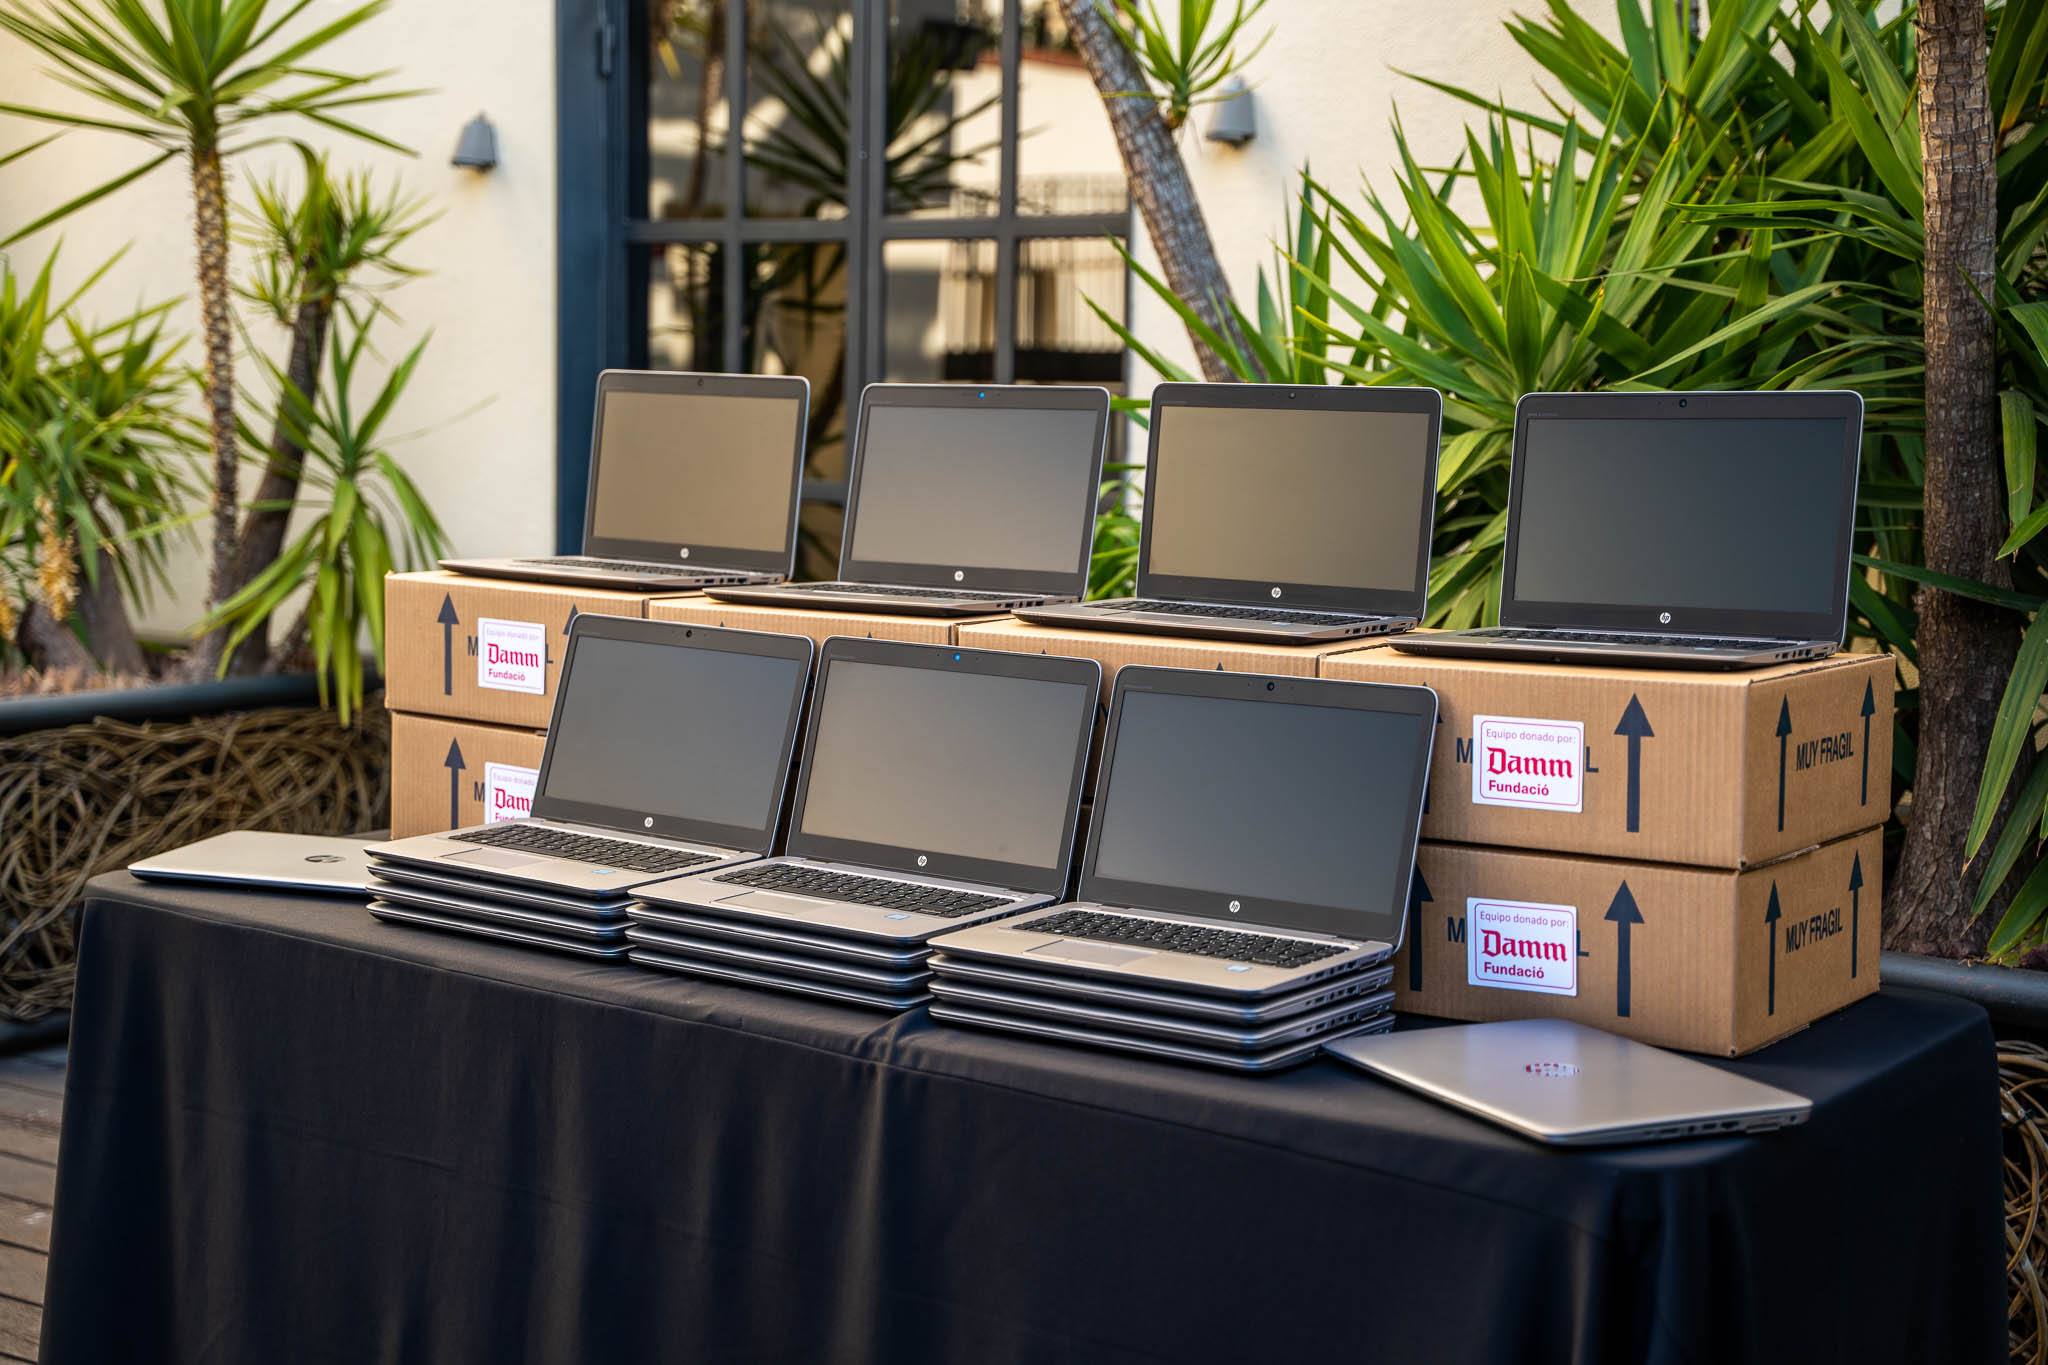 La Fundació Damm dona 40 ordinadors portàtils a NASCO Feeding Minds